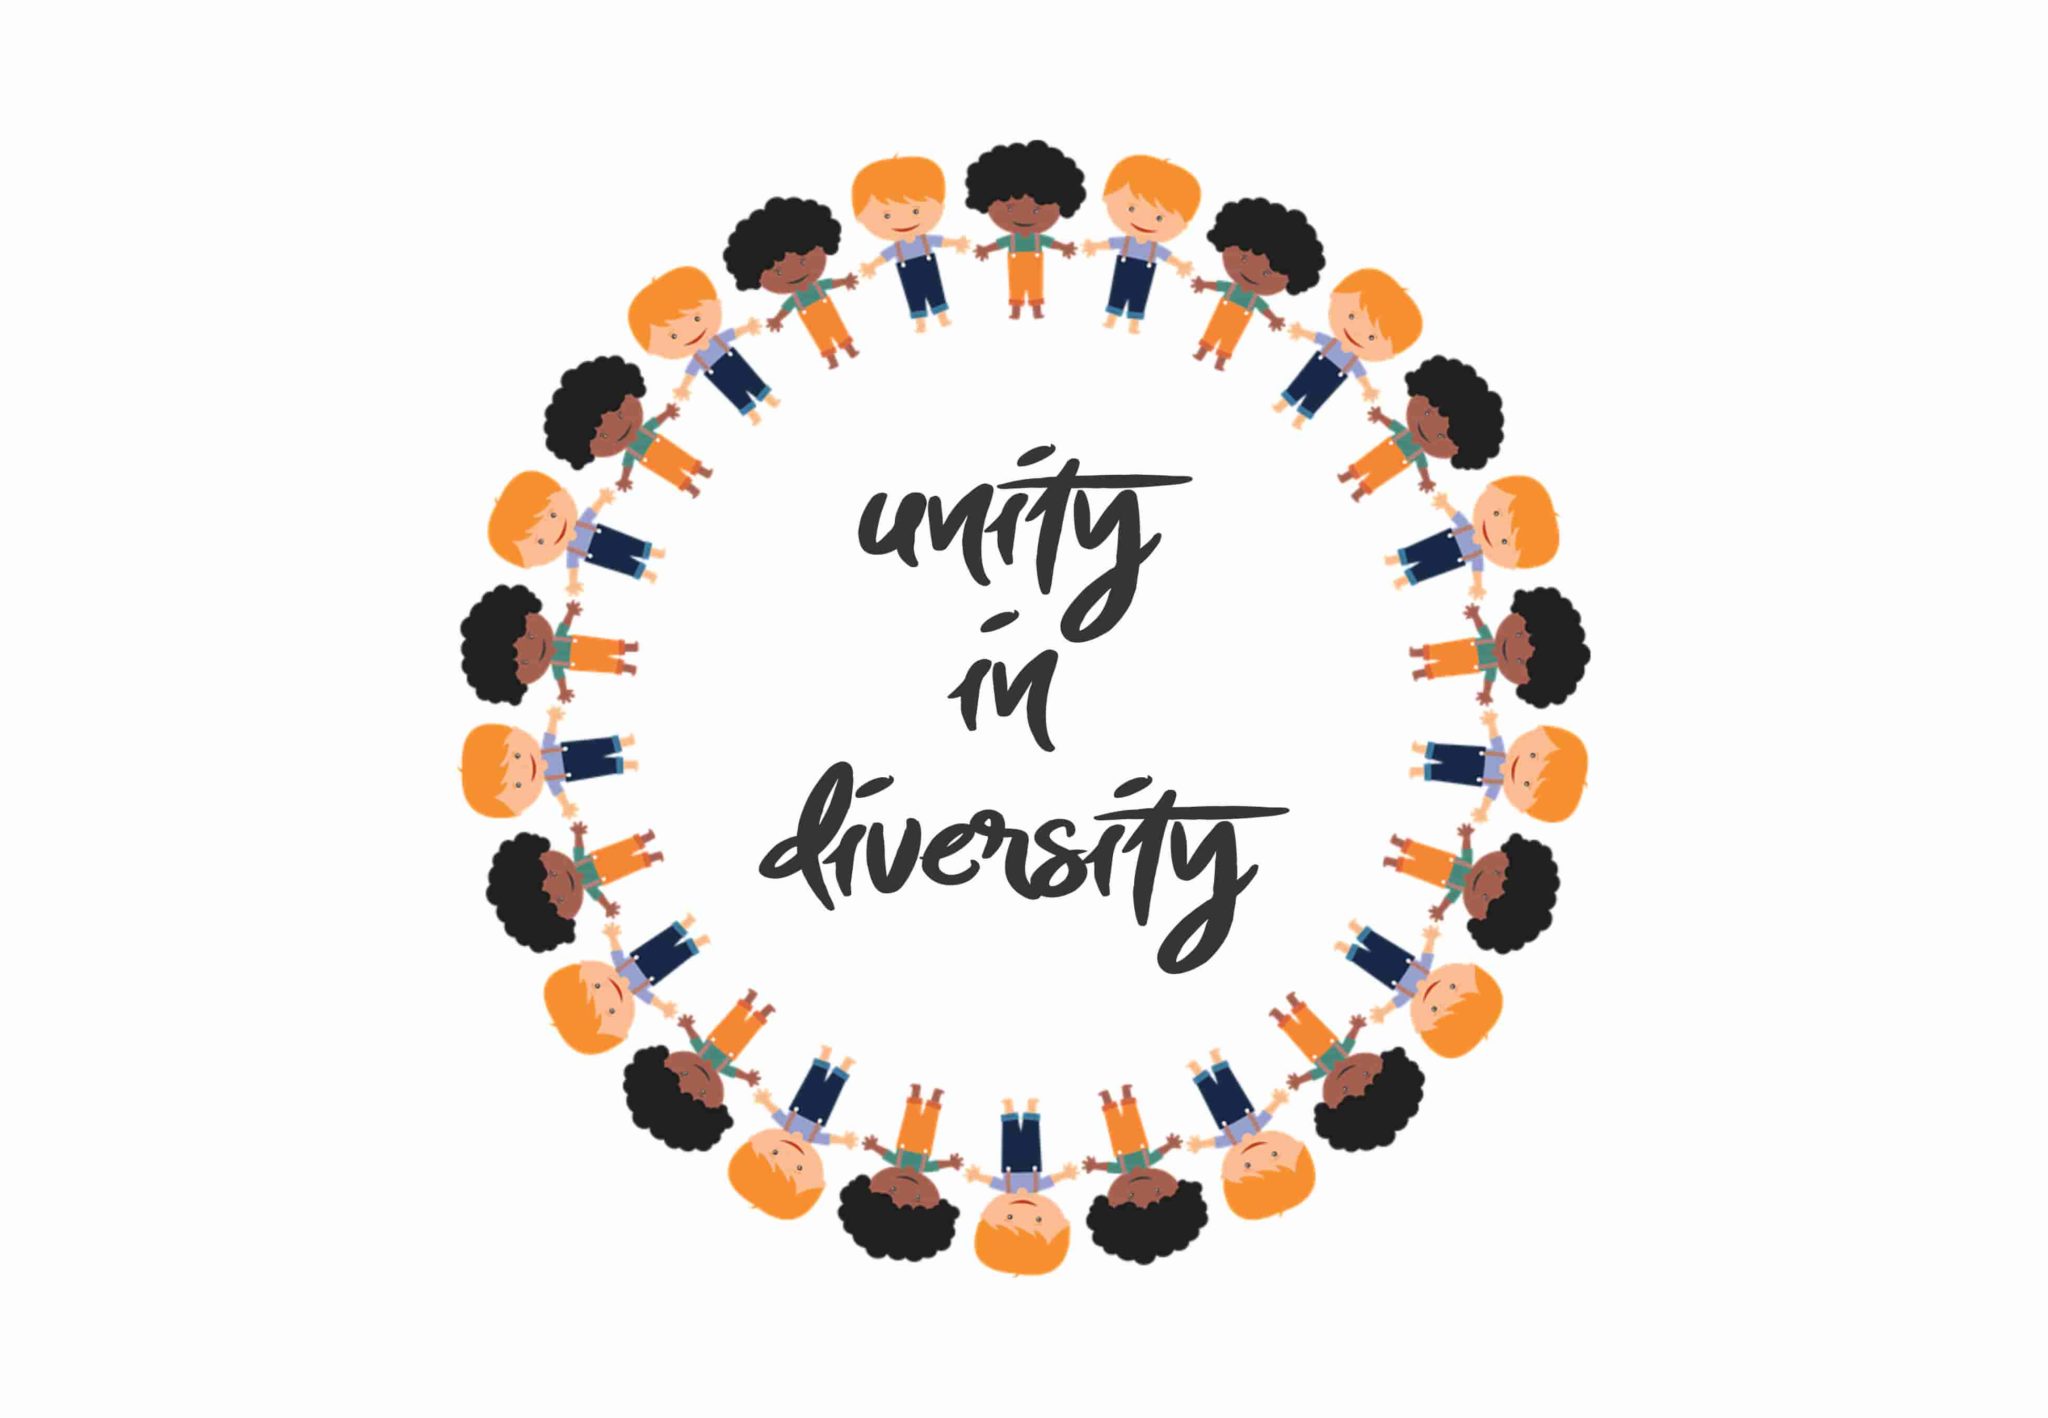 speech on unity in diversity in 150 words